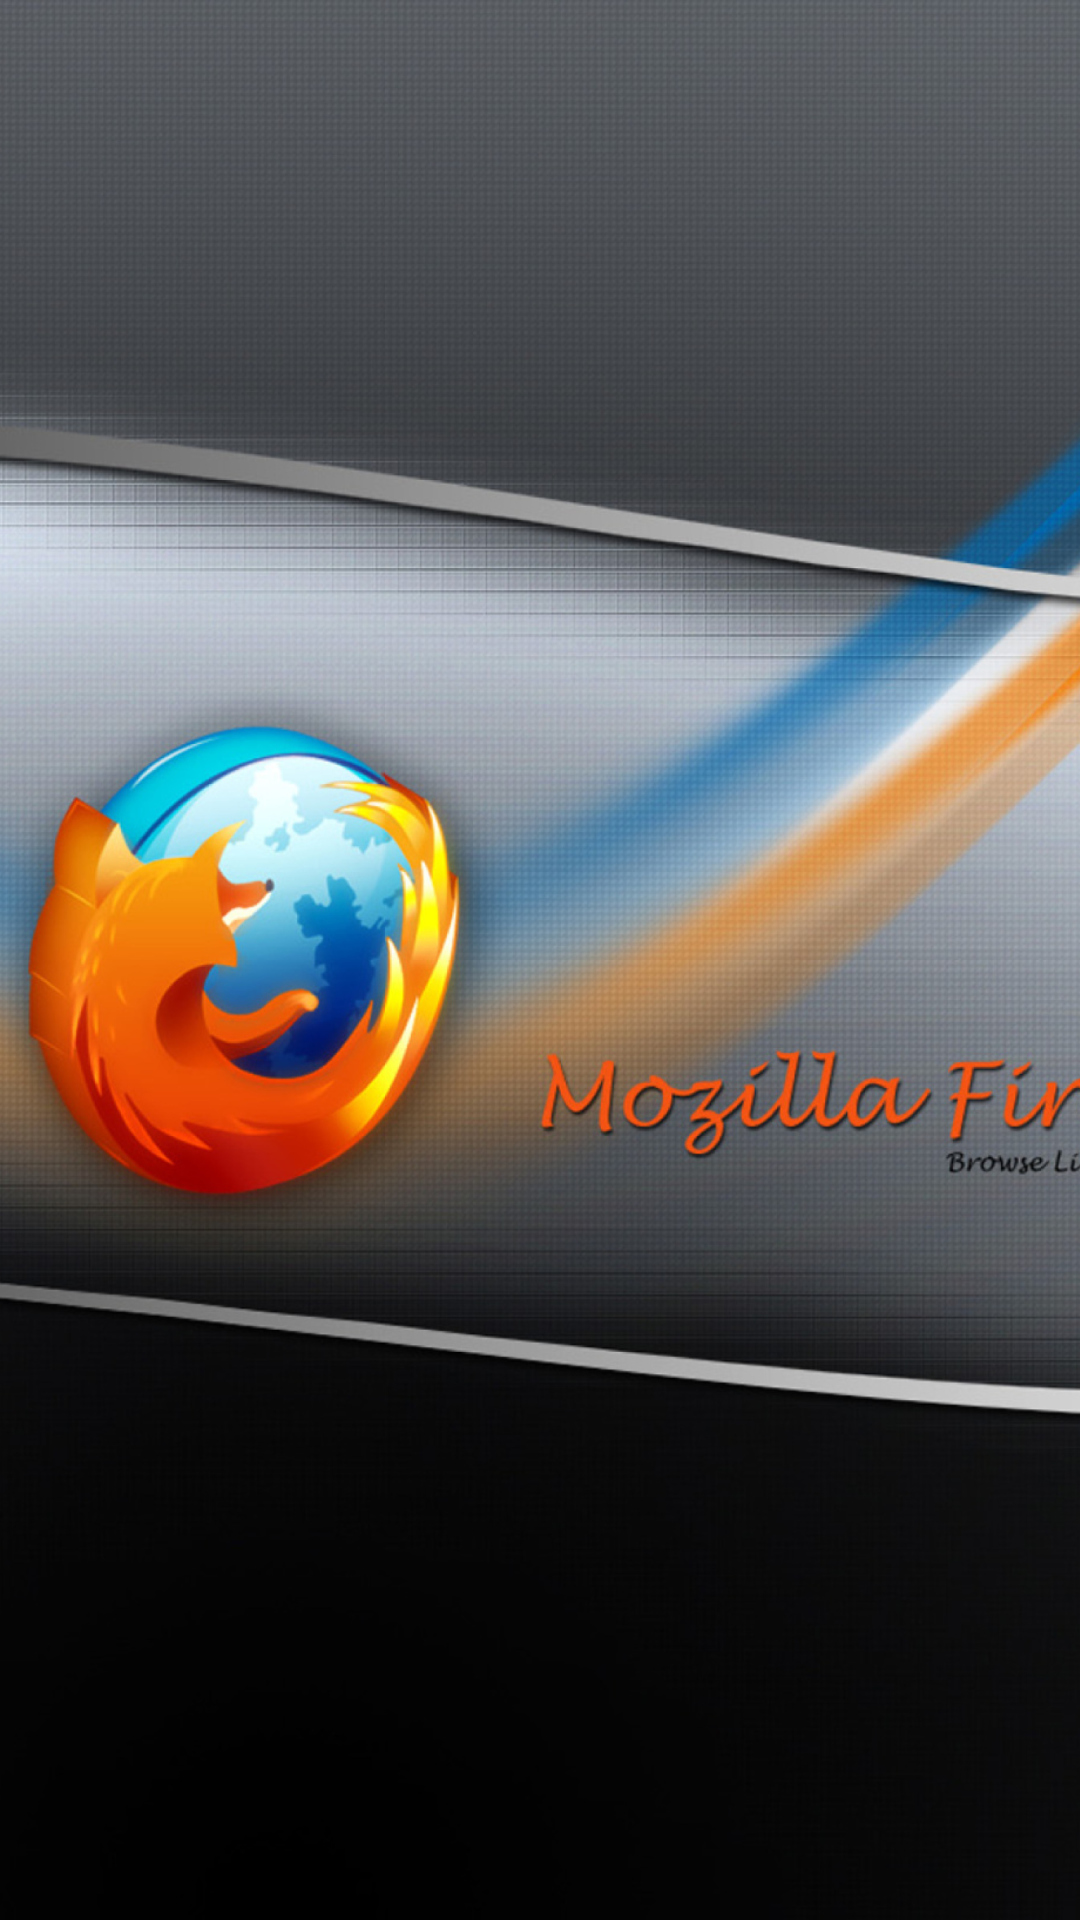 Mozilla Firefox wallpaper 1080x1920